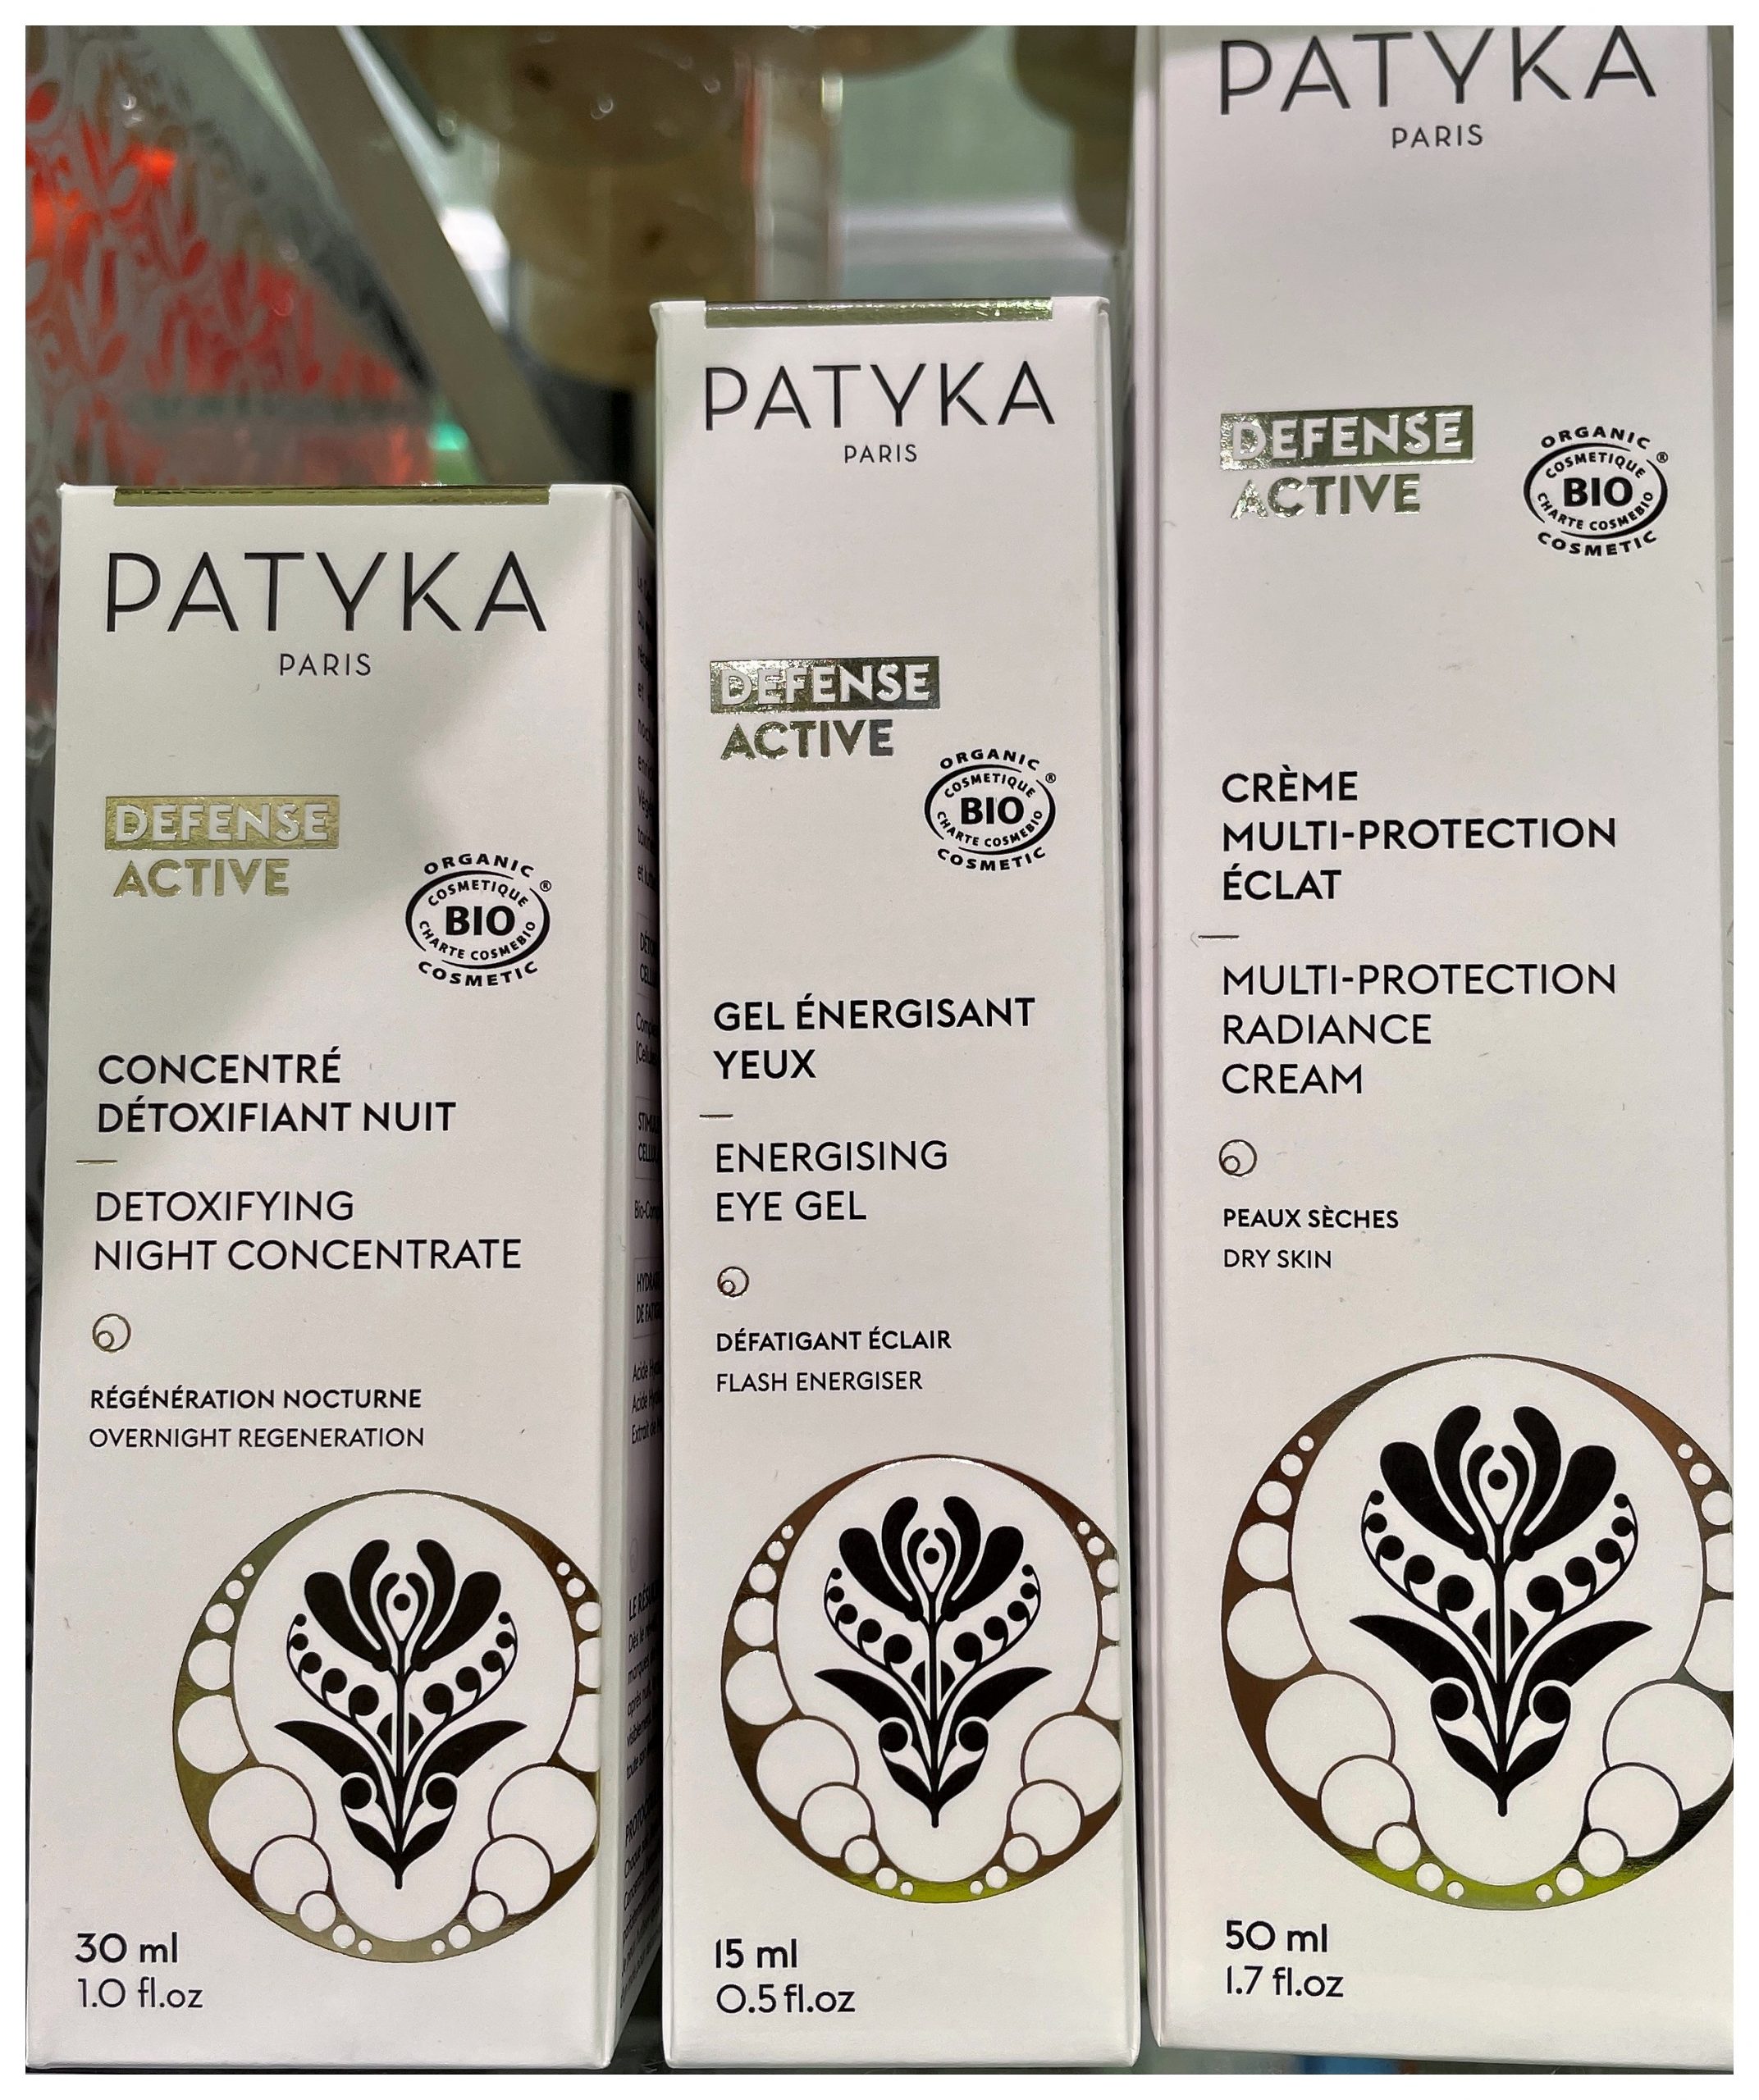 Patyka Cosmetics: La cosmética orgánica desde París Patyka fue la primera marca del mundo en crear una gama de productos cosméticos orgánicos